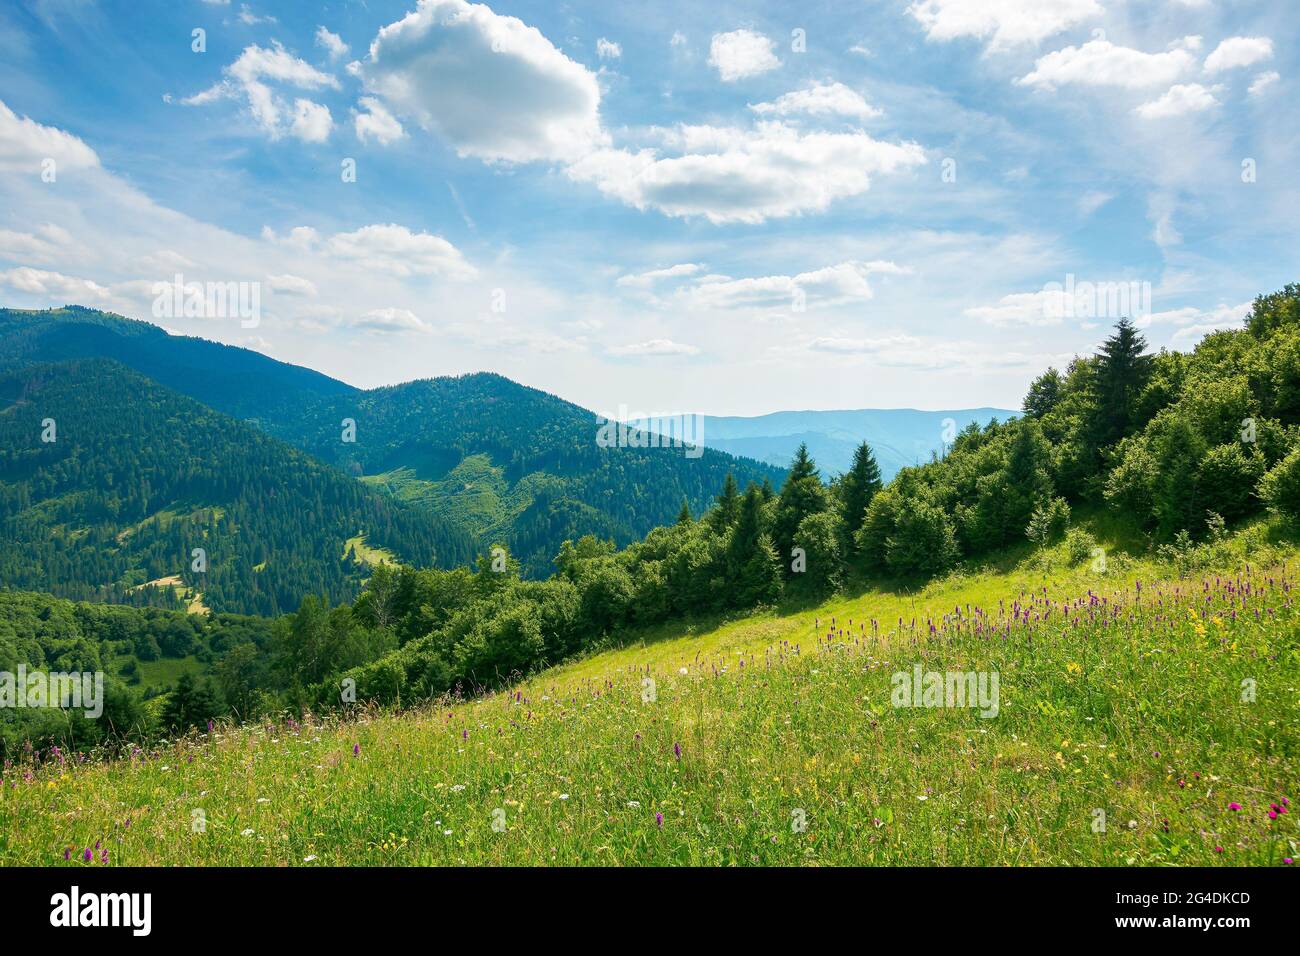 carpazi paesaggio rurale in montagna. erba ed erbe sul prato, alberi sulle colline che si abbondano nella valle. bella estate natura scen Foto Stock